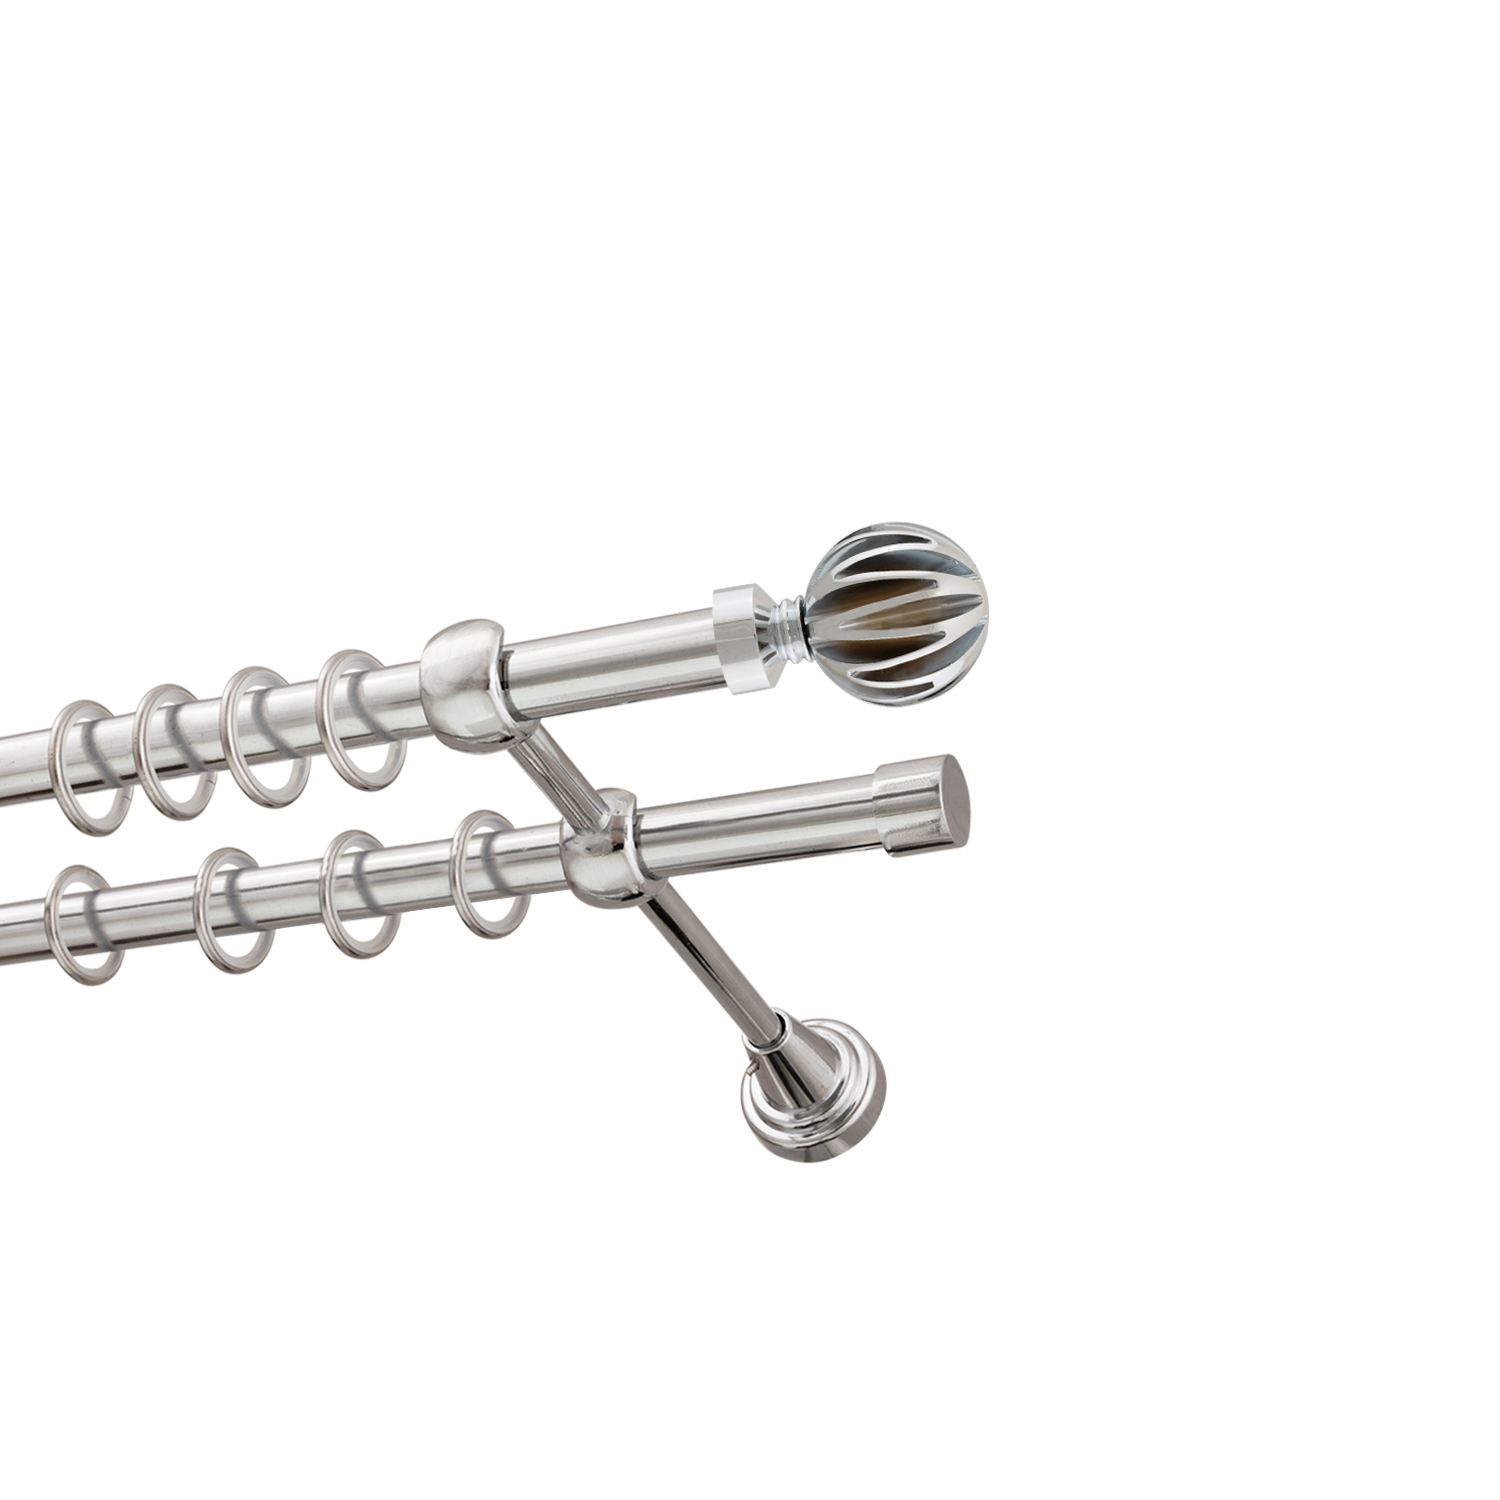 Металлический карниз для штор Шафран, двухрядный 16/16 мм, серебро, гладкая штанга, длина 200 см